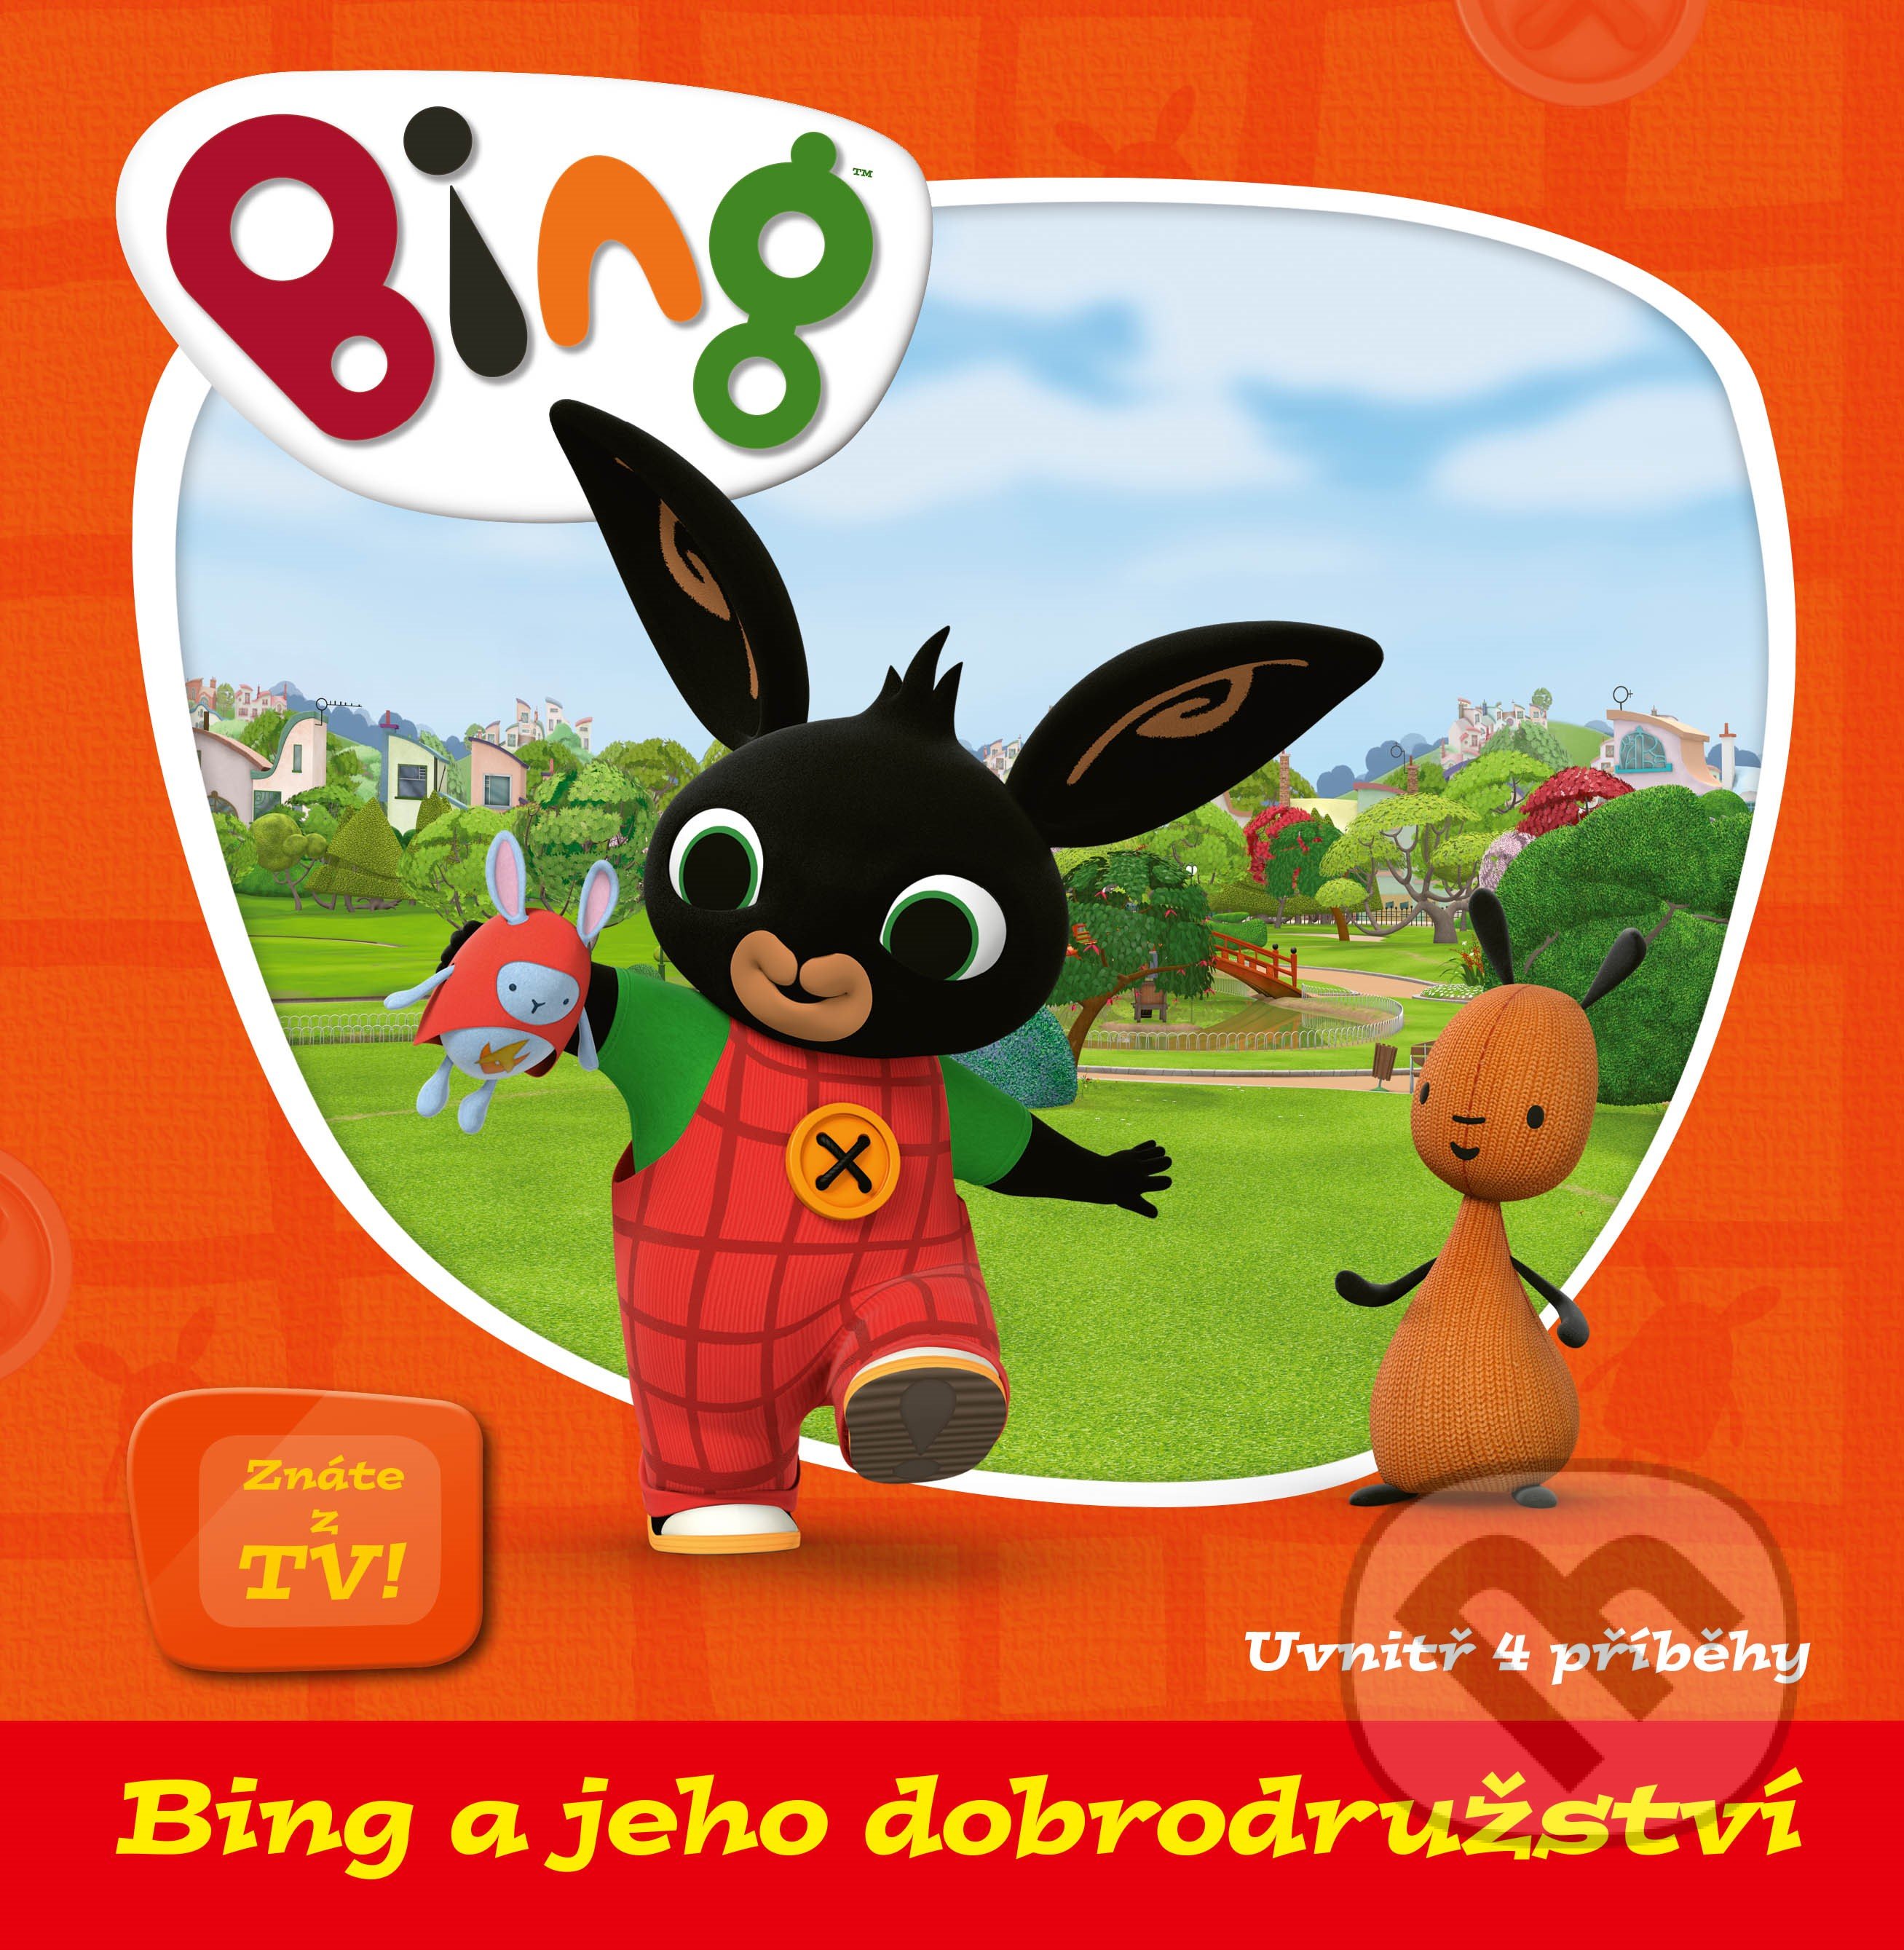 Bing a jeho dobrodružství, Egmont ČR, 2020